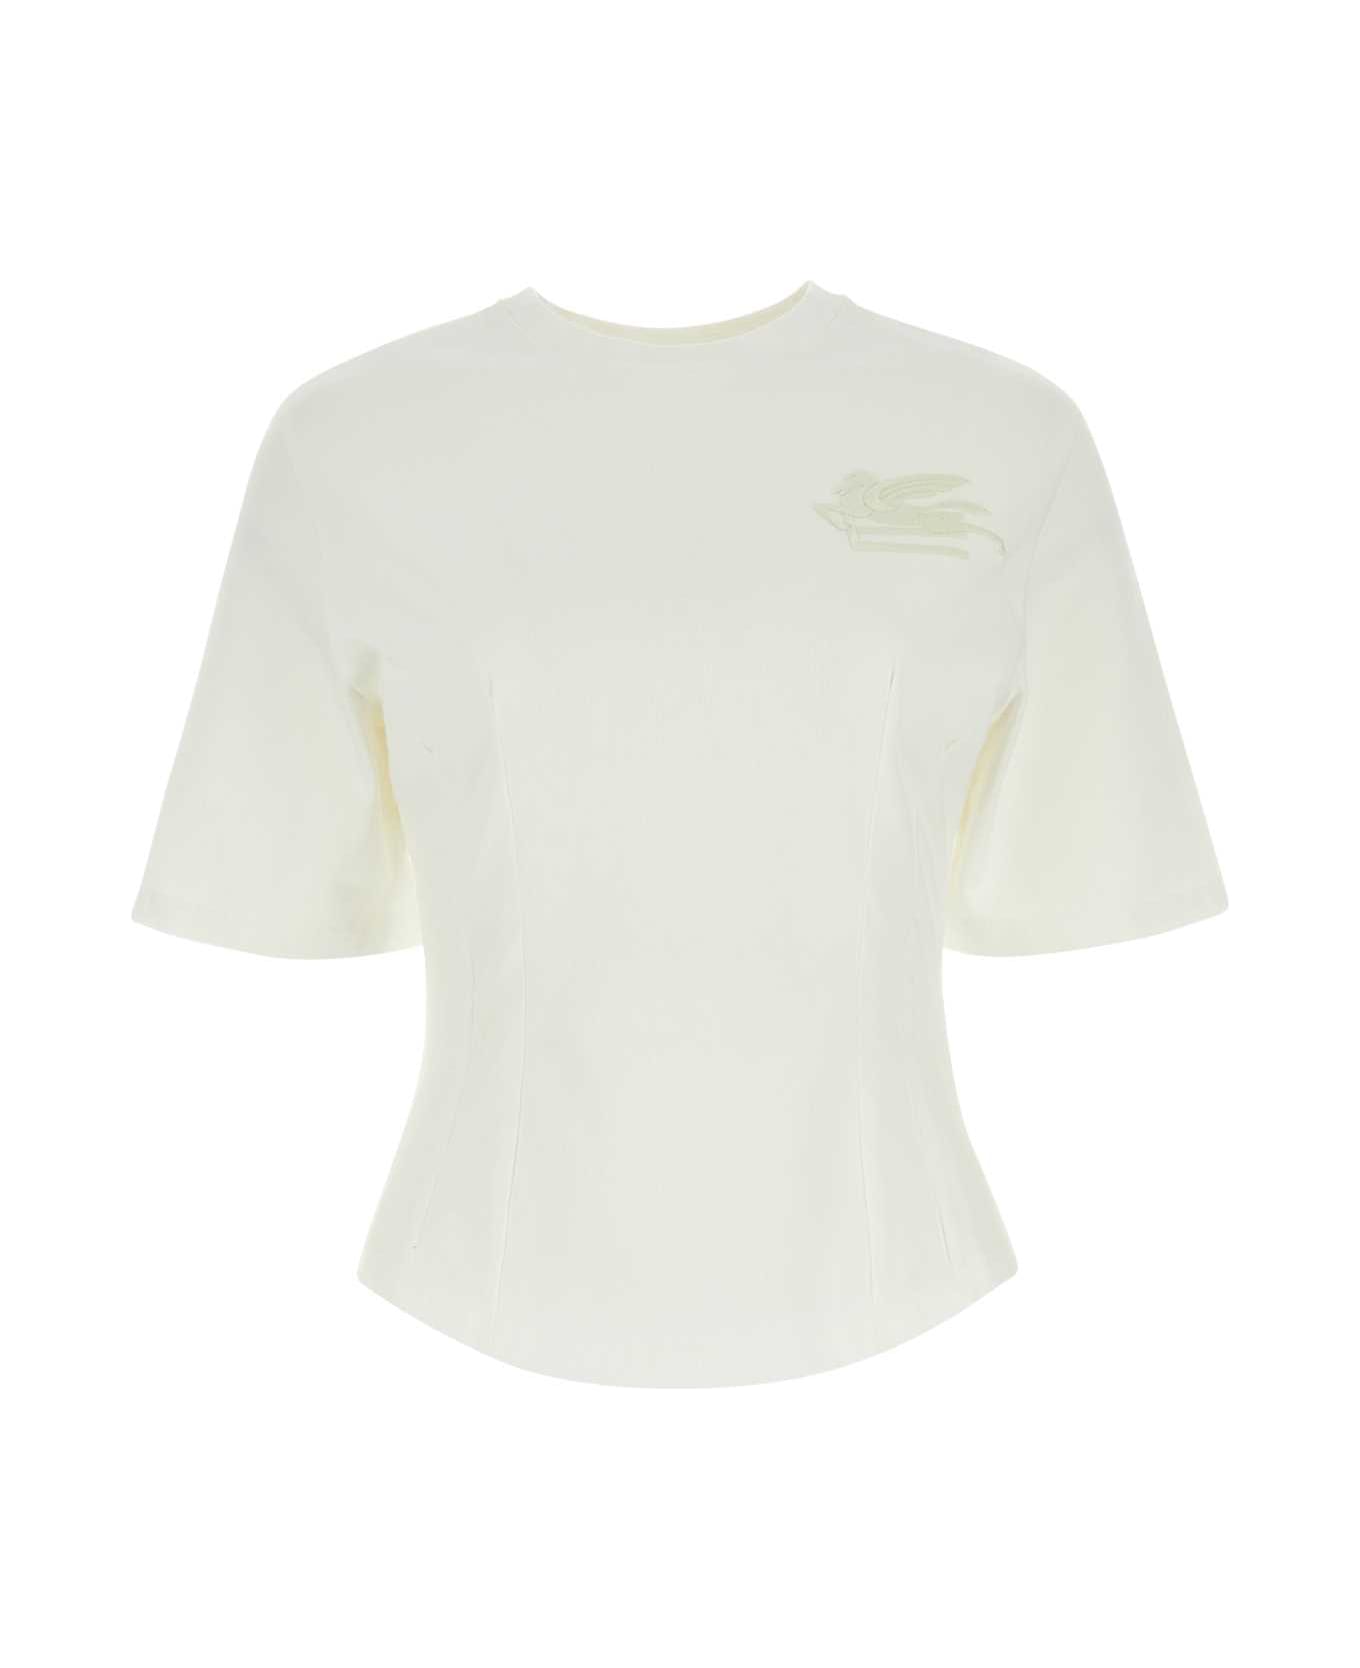 Etro White Cotton T-shirt - WHITE